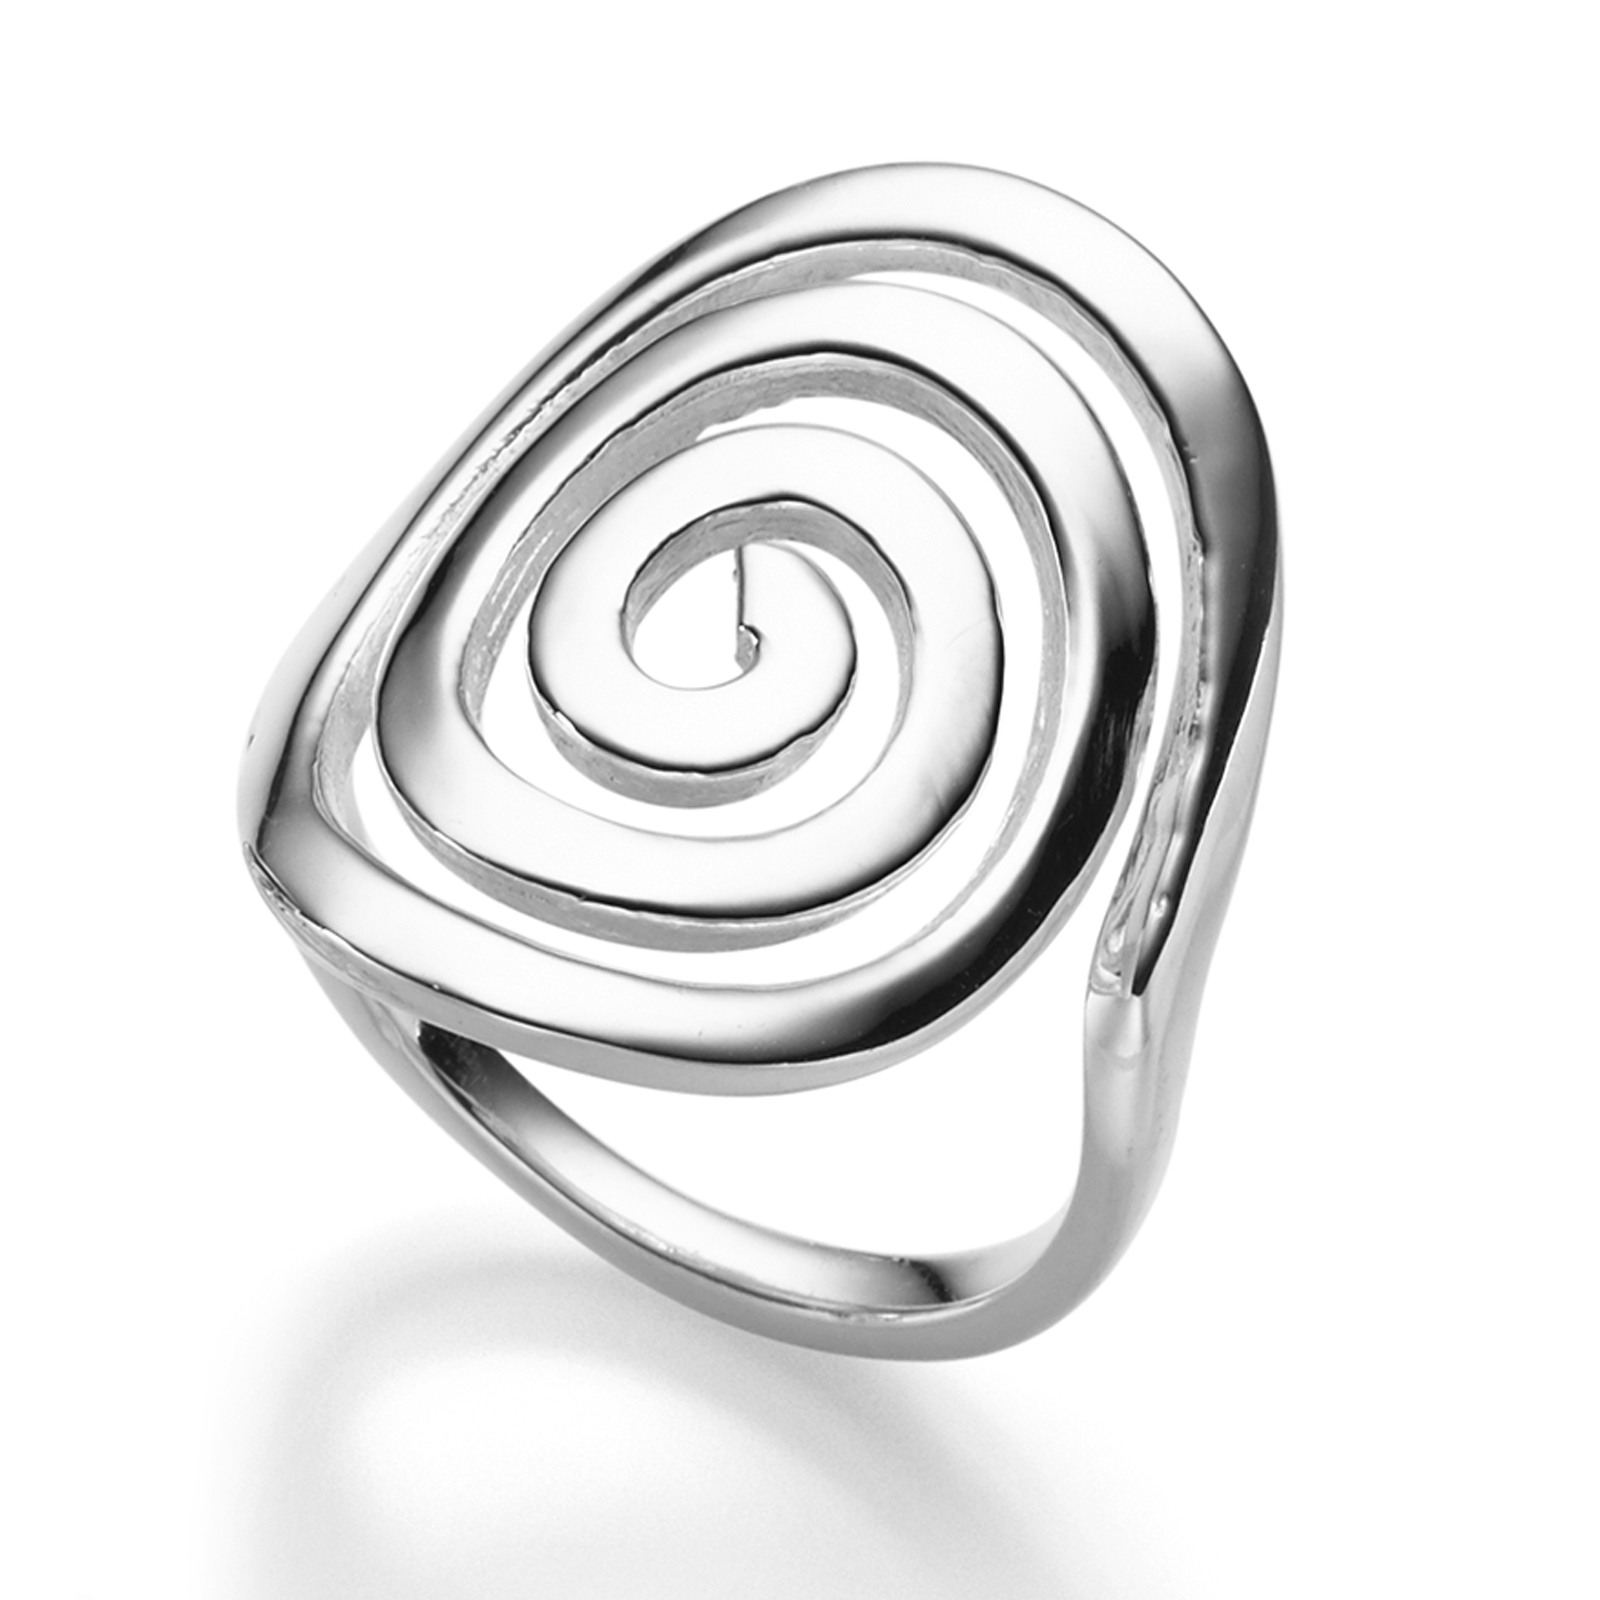 Wundervoller 925 Sterling Silber Ring Designer Spirale Schnörkel Kreis Spule Top 